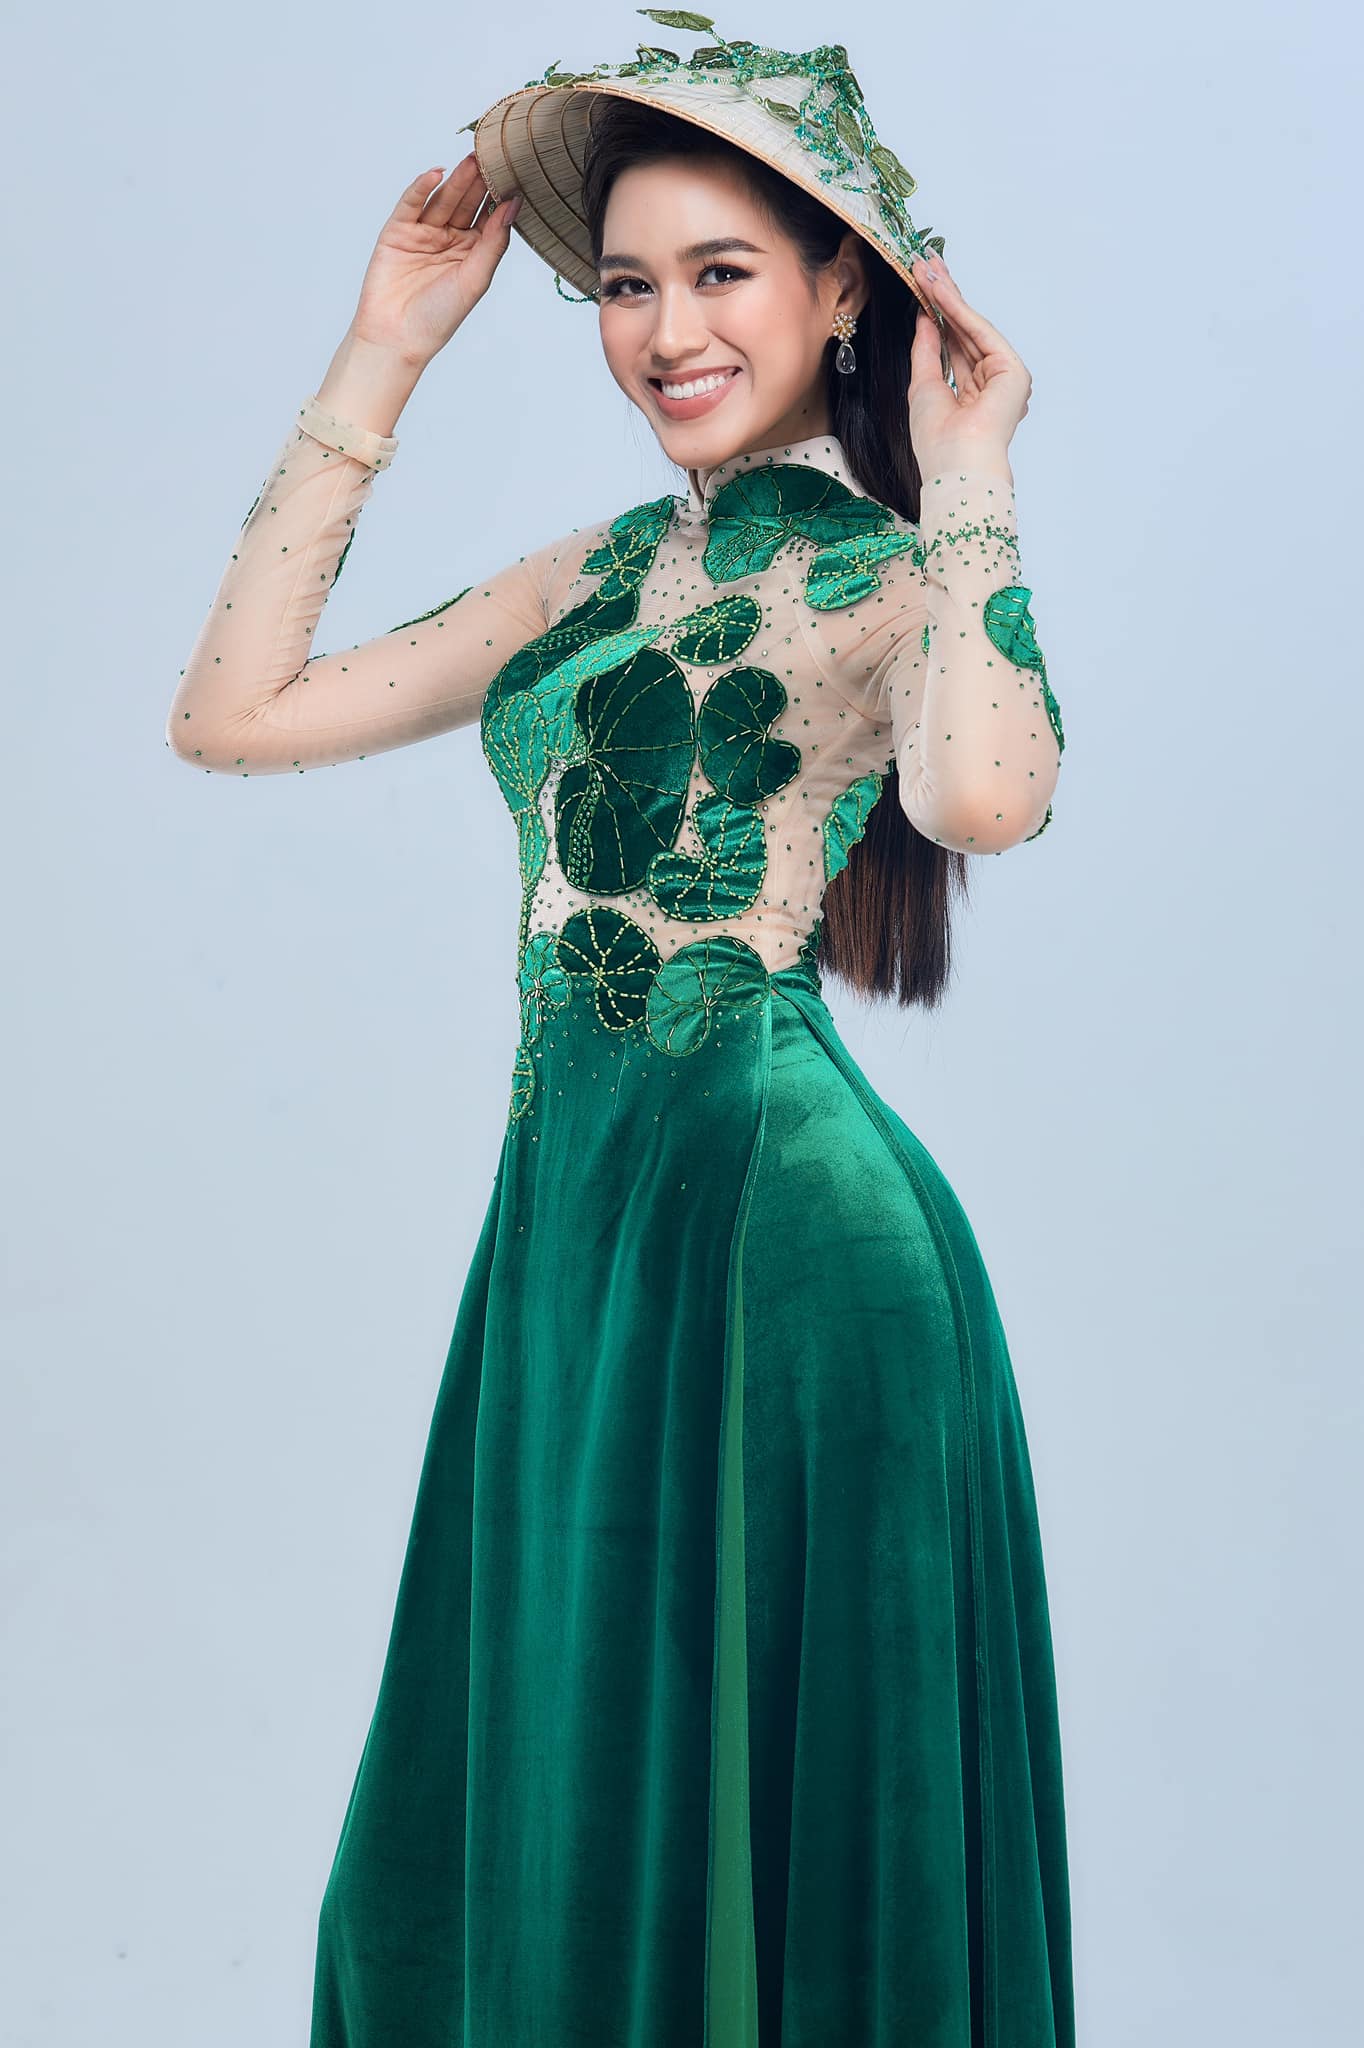 Hành trình đến với Miss World 2021 của Đỗ Thị Hà: Gian nan suốt chặng đường đến phút cuối bật khóc vì hoãn thi - Ảnh 9.